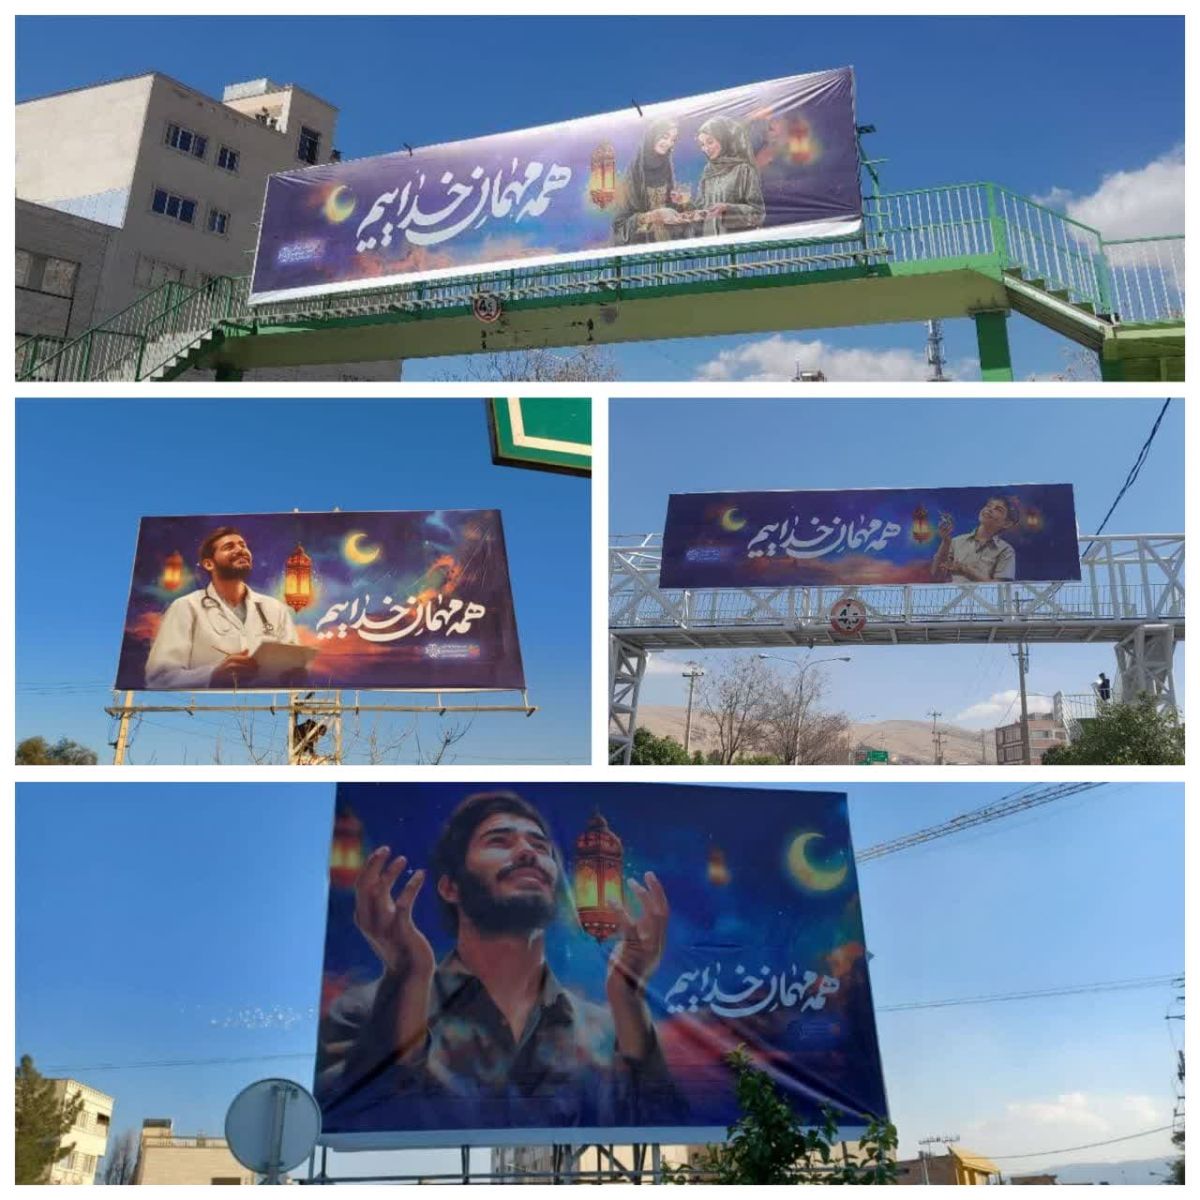 نصب بنر با طرح رمضان روی پل ها و بیلبورد های شیراز